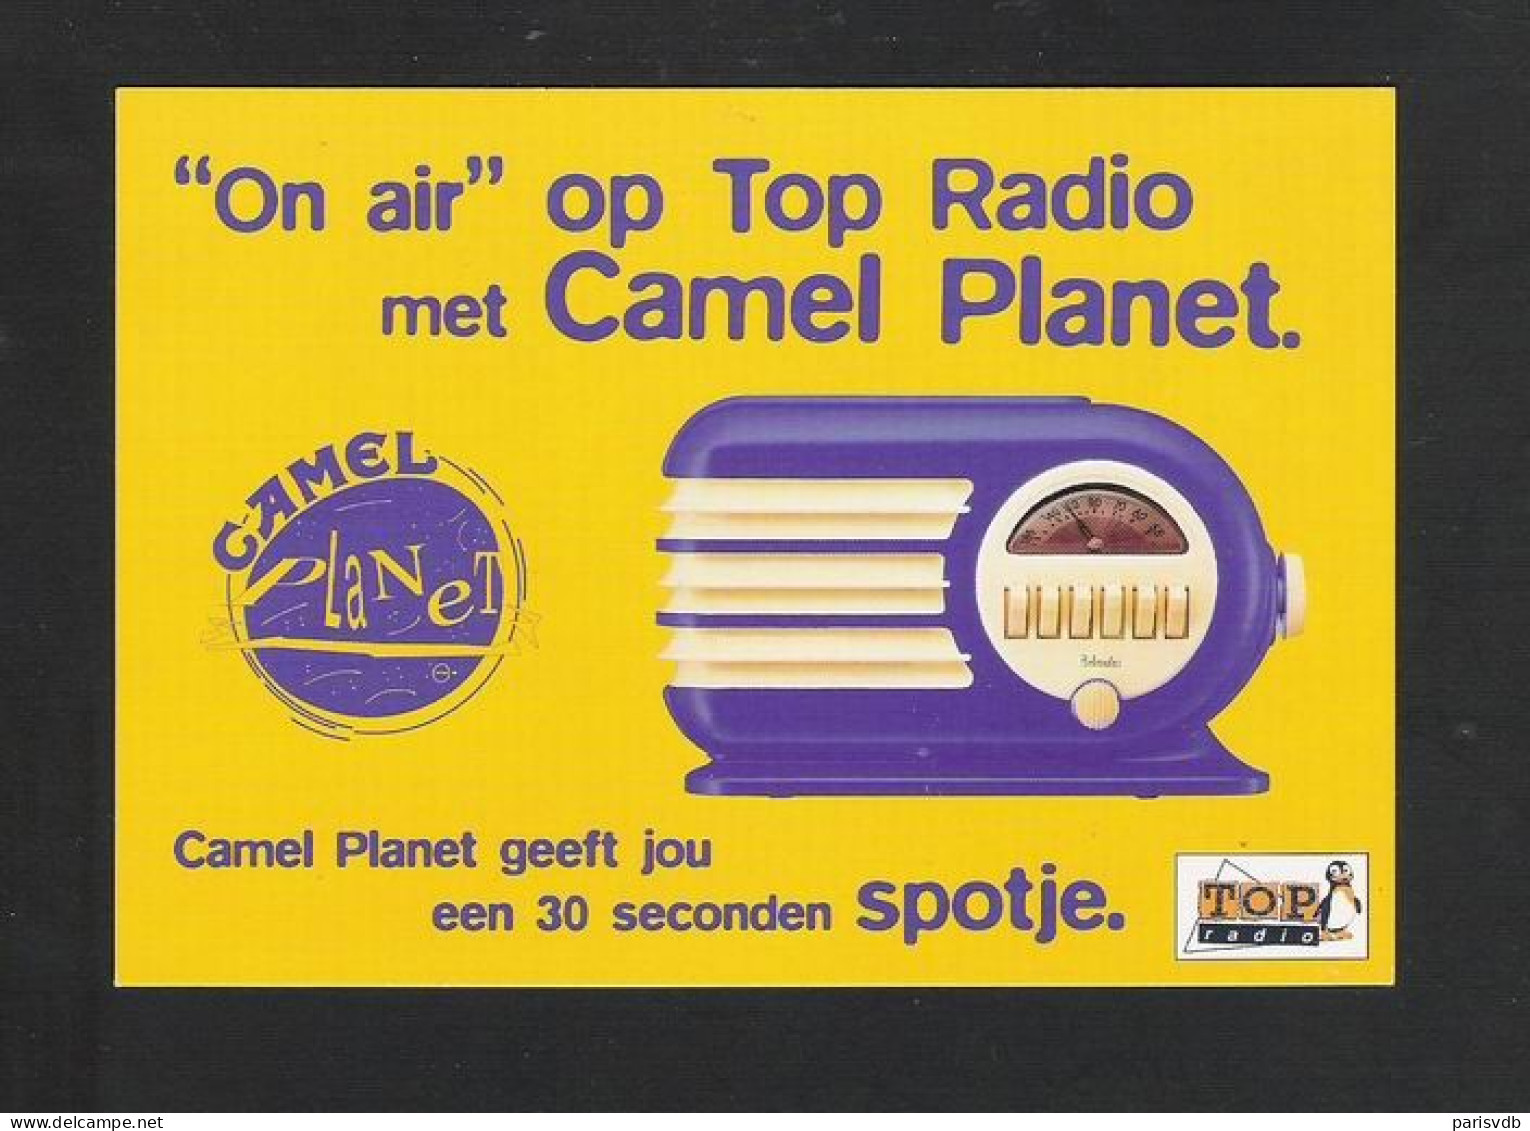 CAMEL PLANET - "ON AIR" OP TOP RADIO MET CAMEL PLANET (4402) - Publicidad